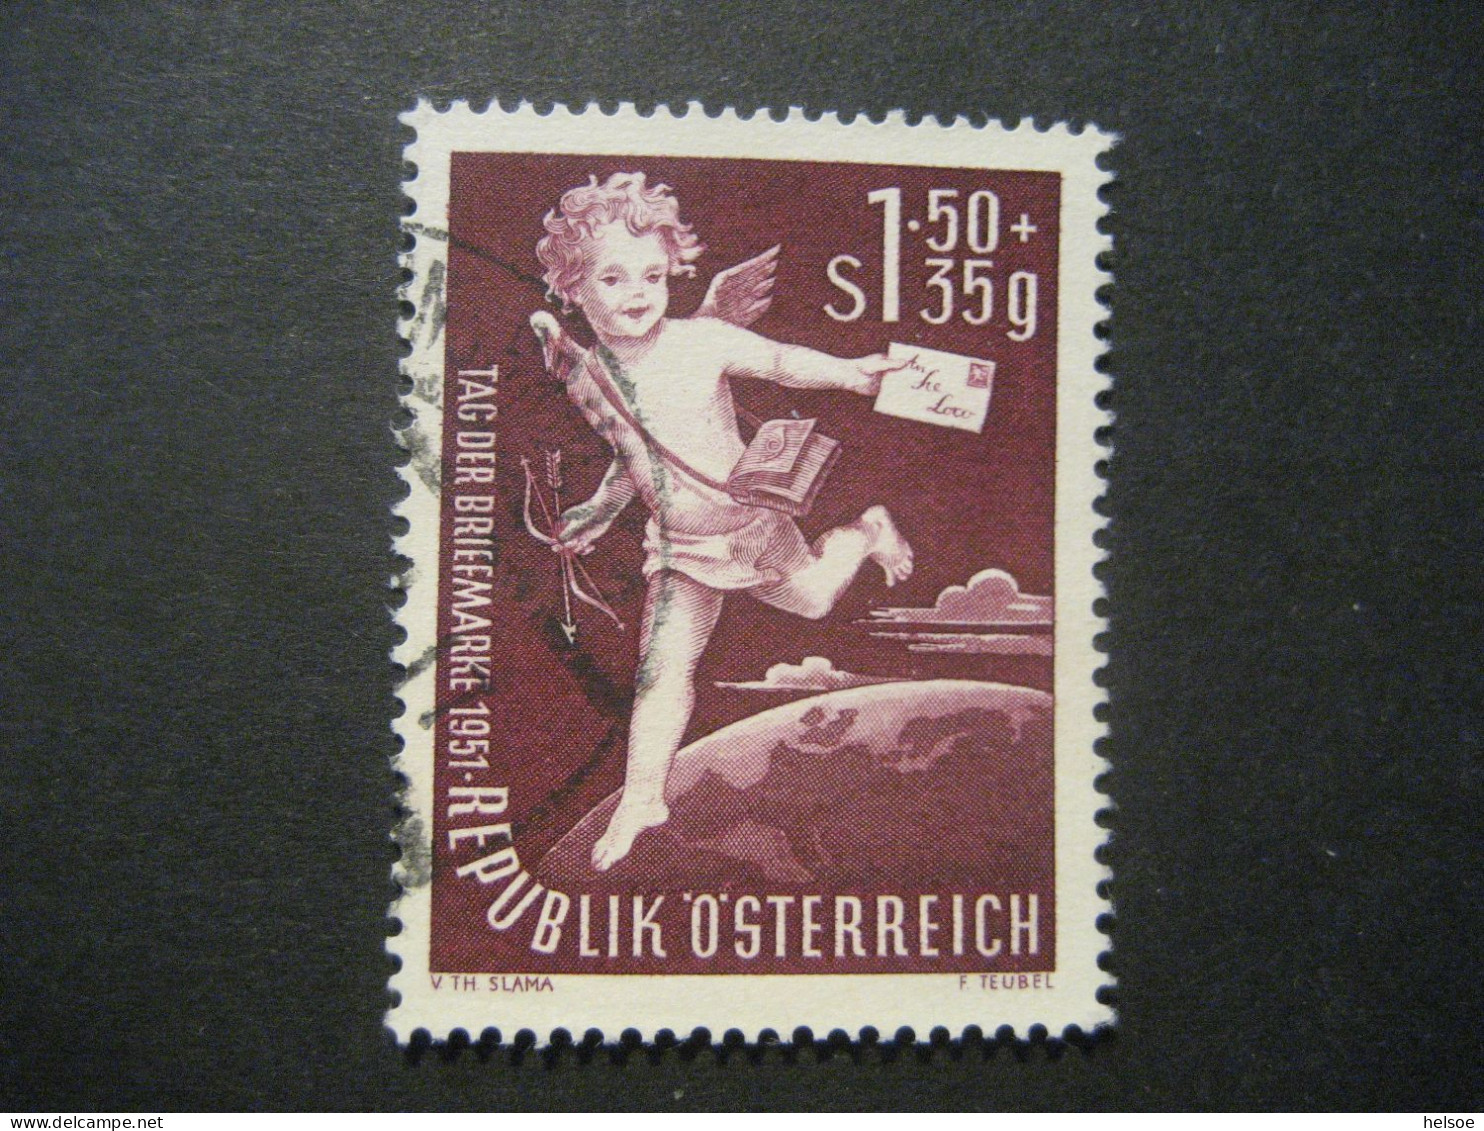 Österreich 1952- Tag Der Briefmarke Mit Plattenfehler Loch In Pfeilspitze, Mi. 972 II Gebraucht - Abarten & Kuriositäten